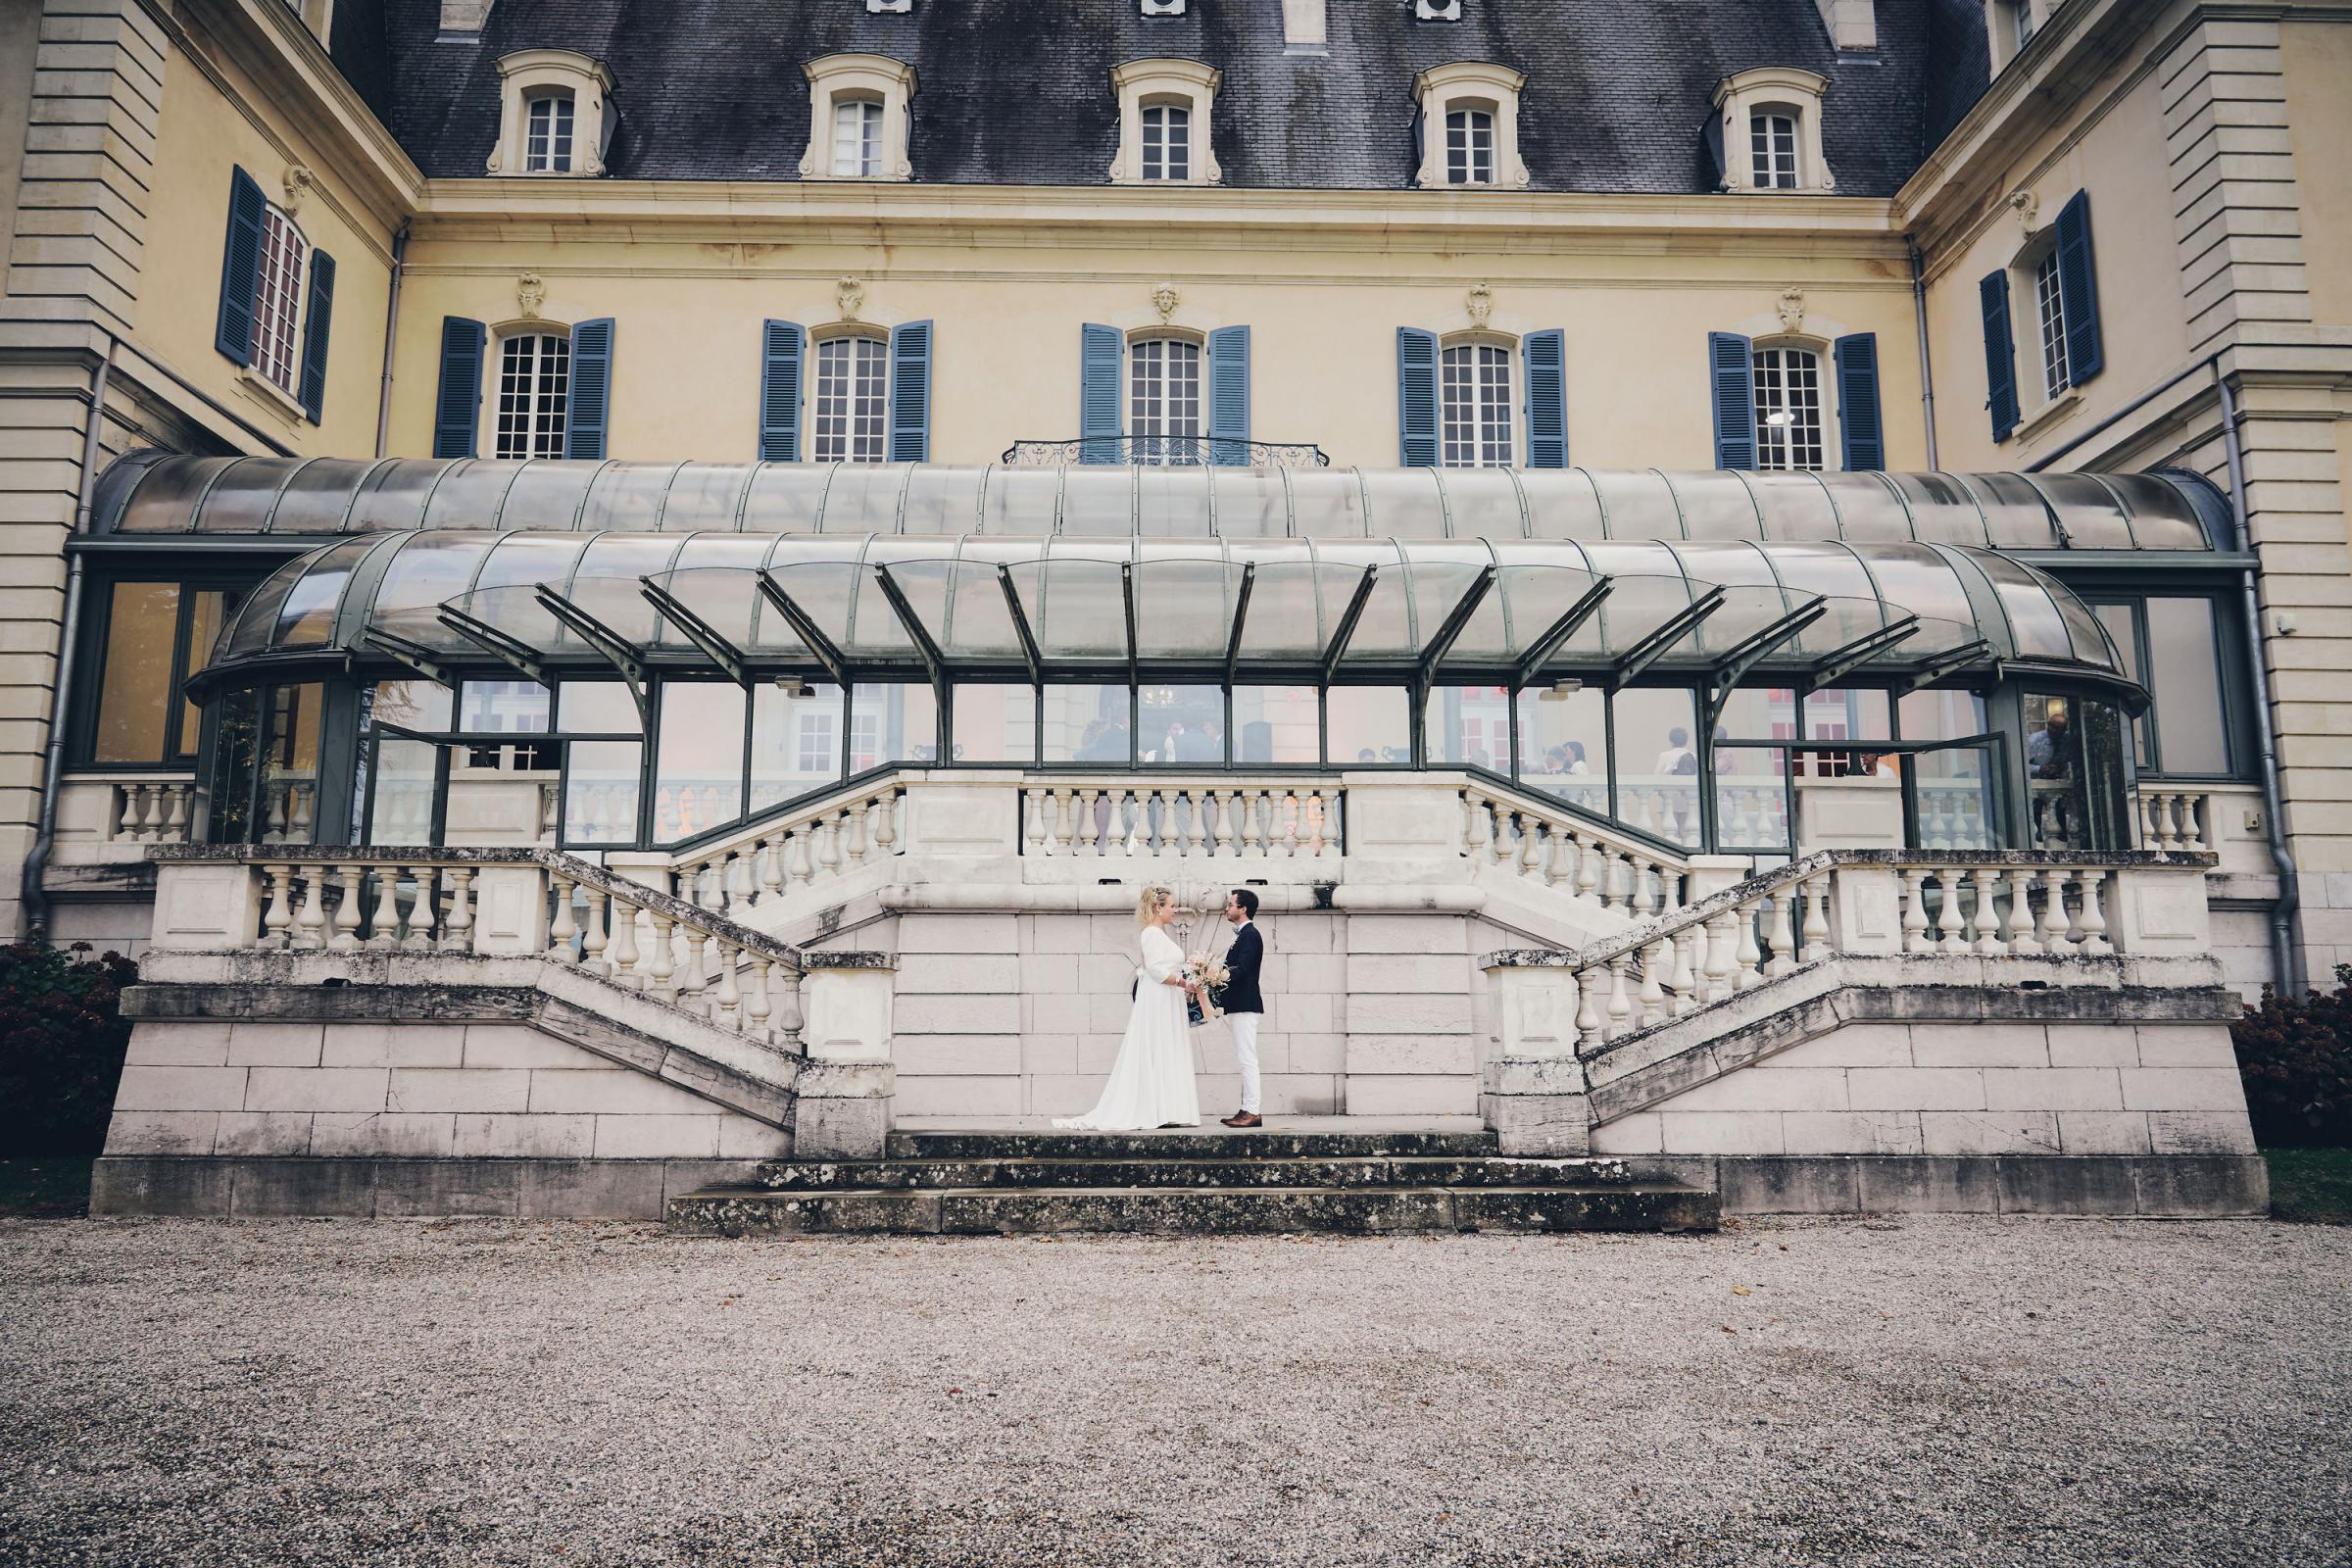 photographes-vidéaste-mariage-chateau-rajat-lyon-amelie-michael-juetjuphotographie